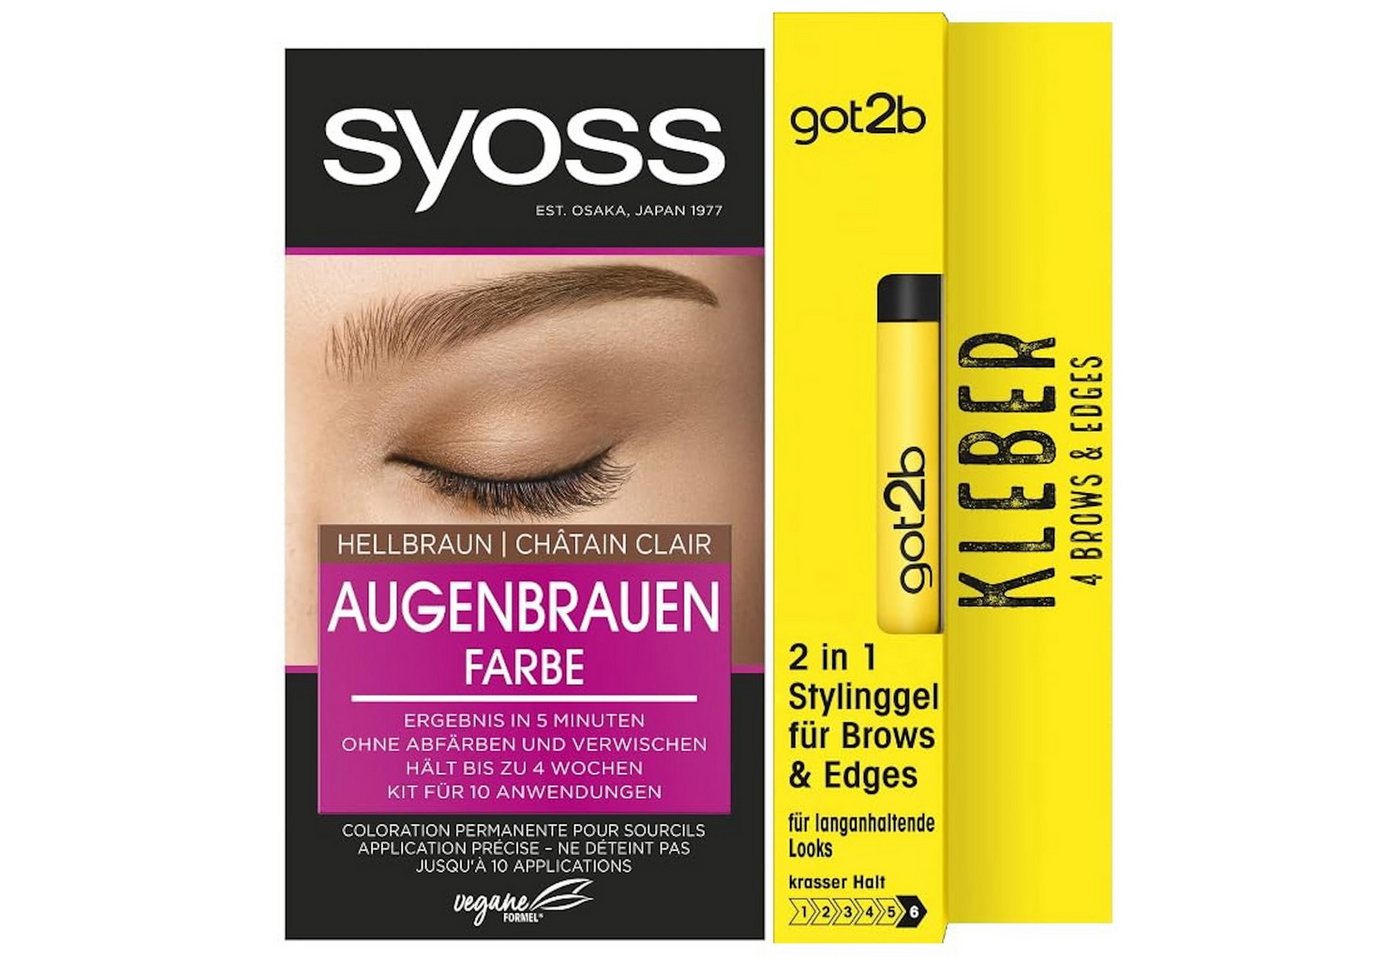 Syoss Augenbrauenfarbe Hellbraun 17ml & GOT2B 2in1 Stylinggel Kleber 4 Brows & Edges 16ml, 2-tlg., für einen natürlochen Look von Syoss